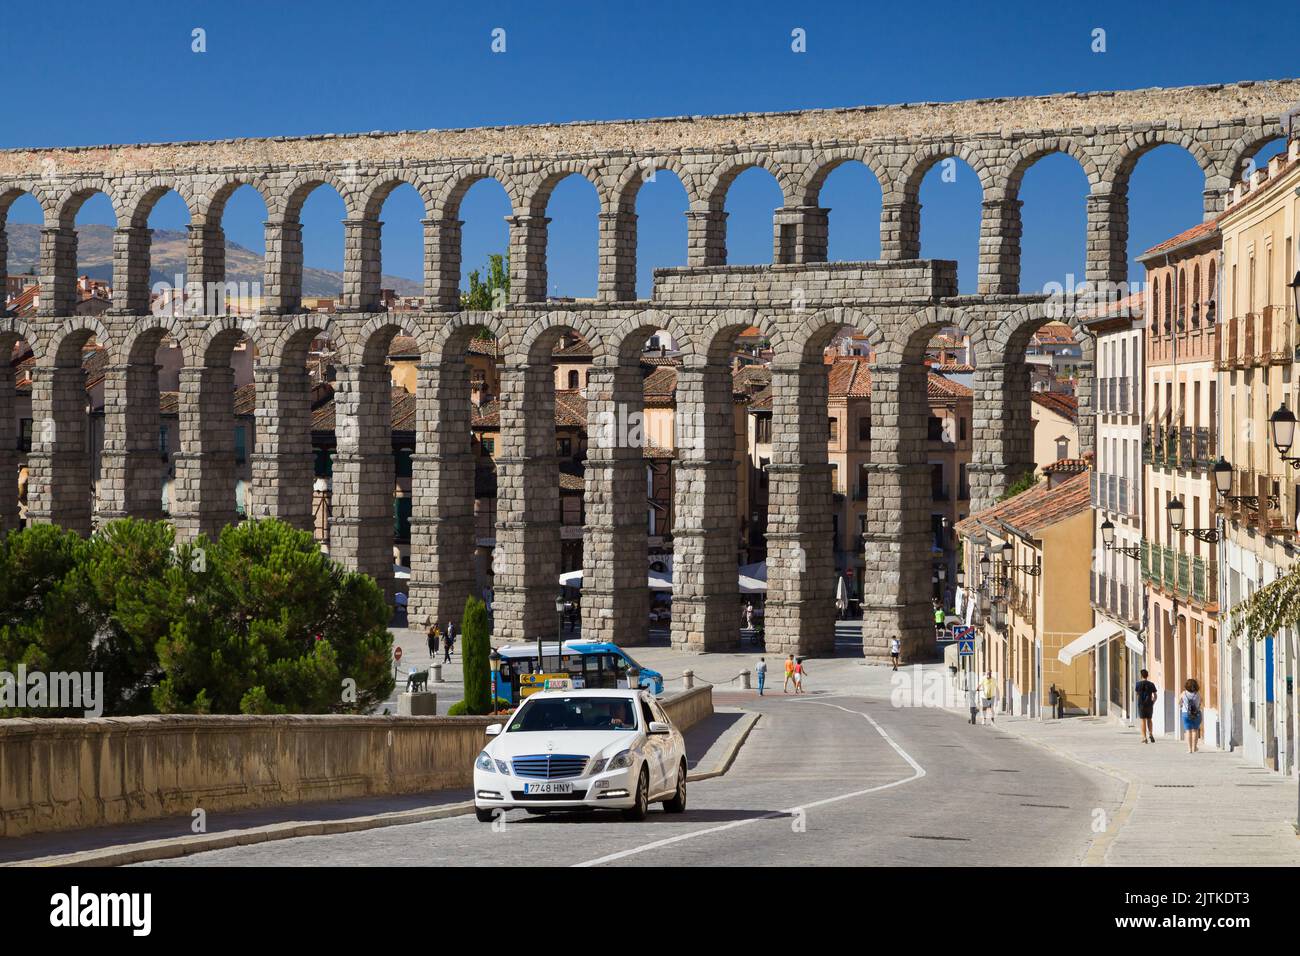 Segovia, España - 22 de agosto de 2020: Acueducto de Segovia de la calle San Juan, Segovia, España. Foto de stock